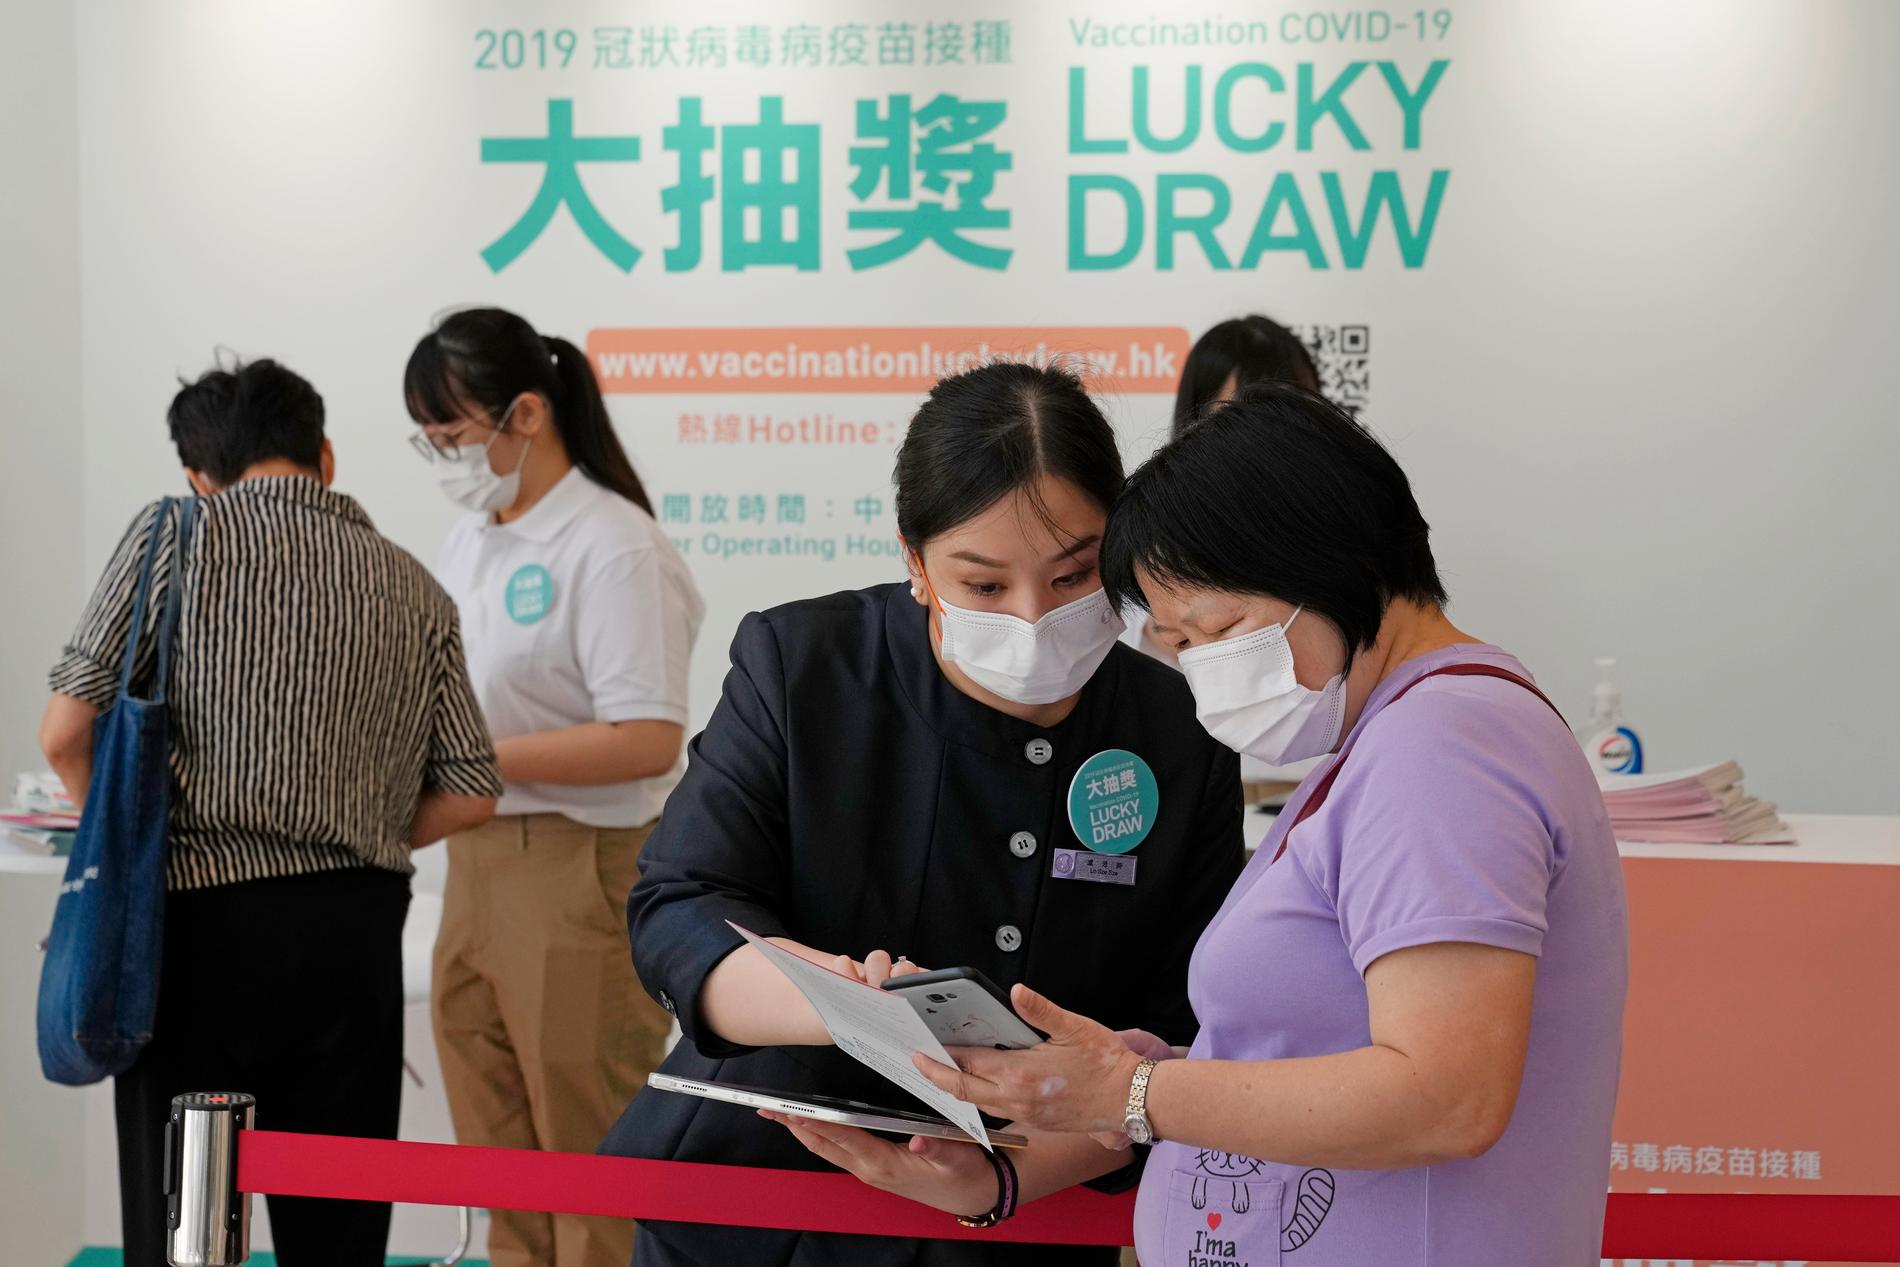 Vaccinerade Hongkong-bor kan registrera sig för att delta i en utlottning. Man kan bland annat vinna en Tesla. 